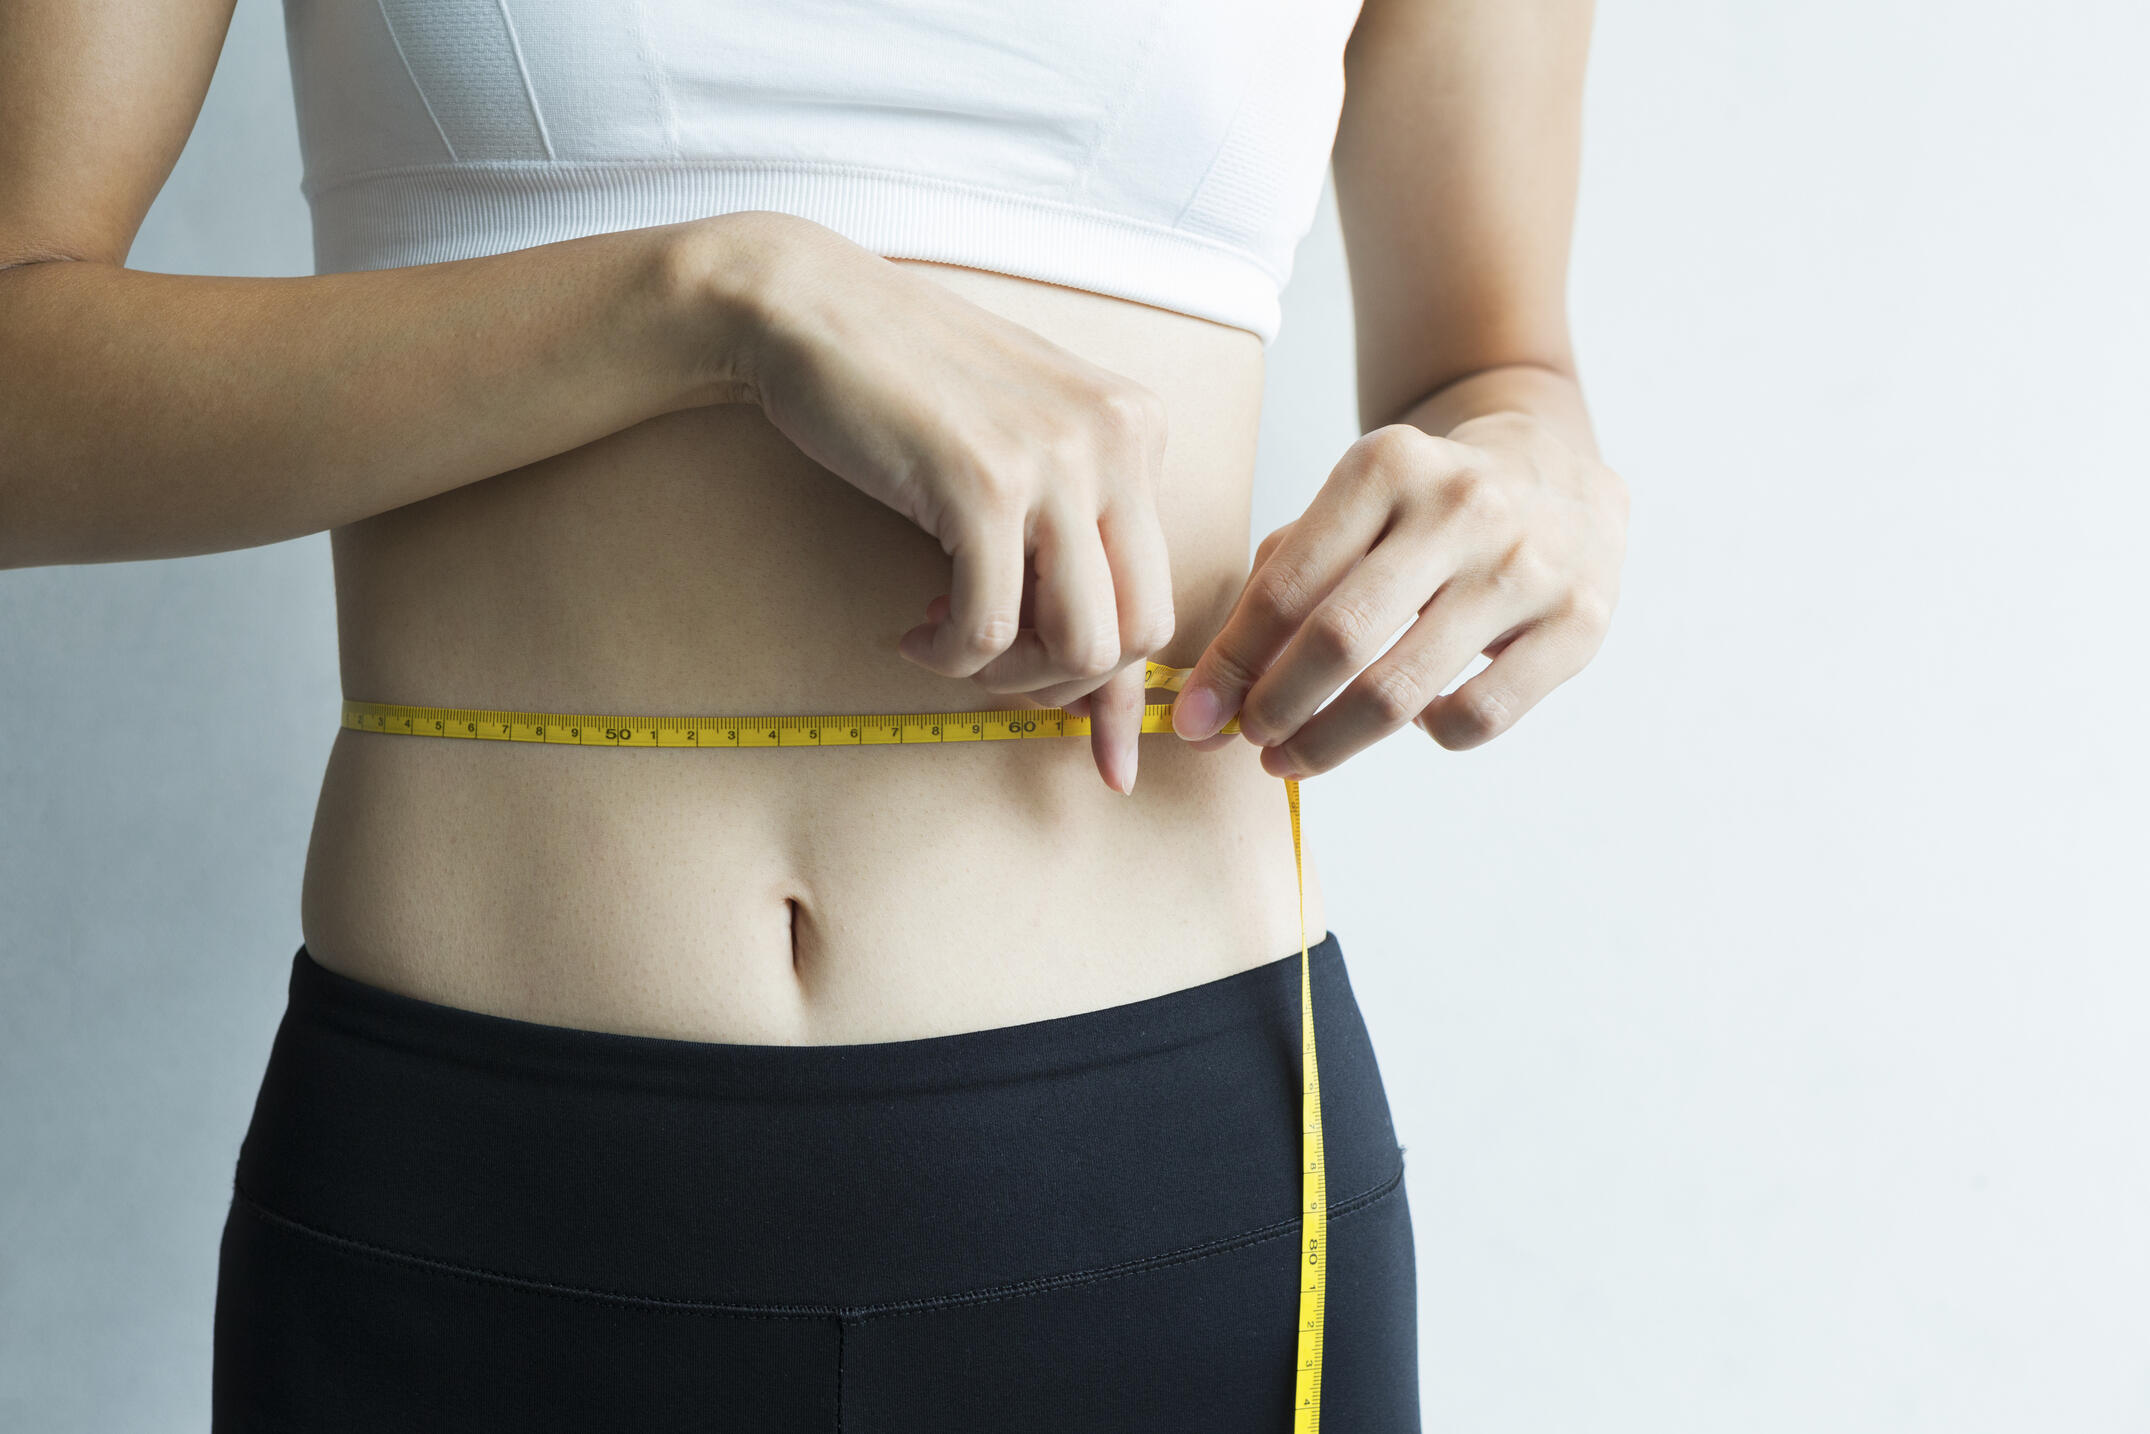 周り 落とす 女性 脂肪 お腹 お腹周りの脂肪の落とし方女性30代から40・50代の30秒筋トレ運動